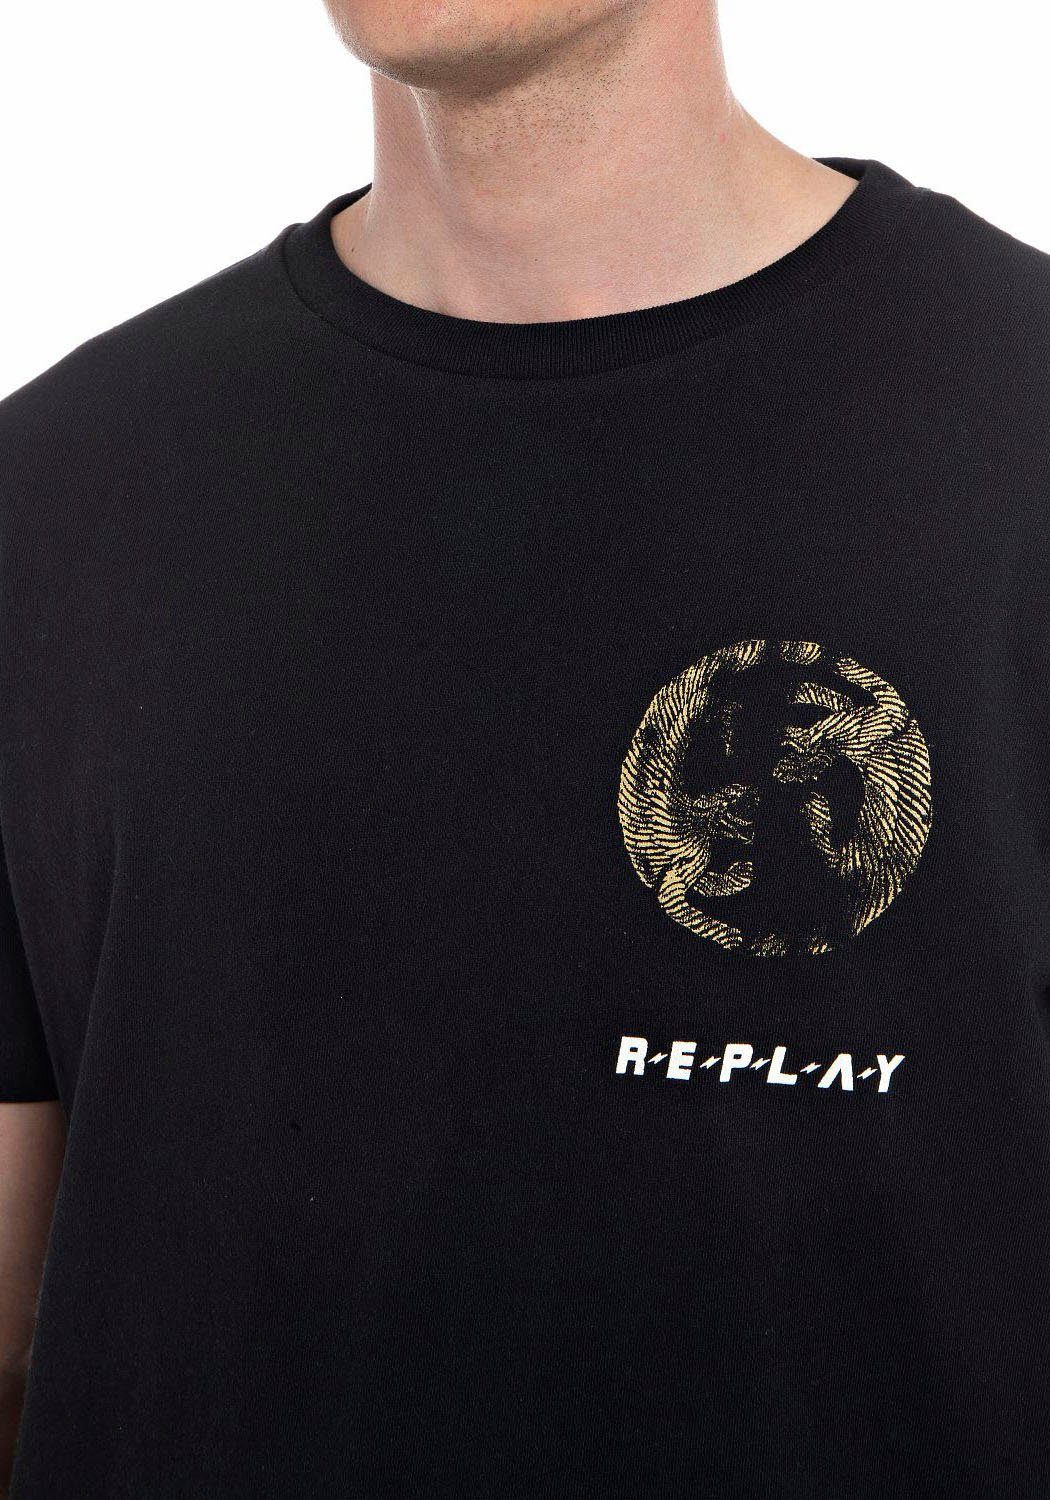 Replay T-Shirt black